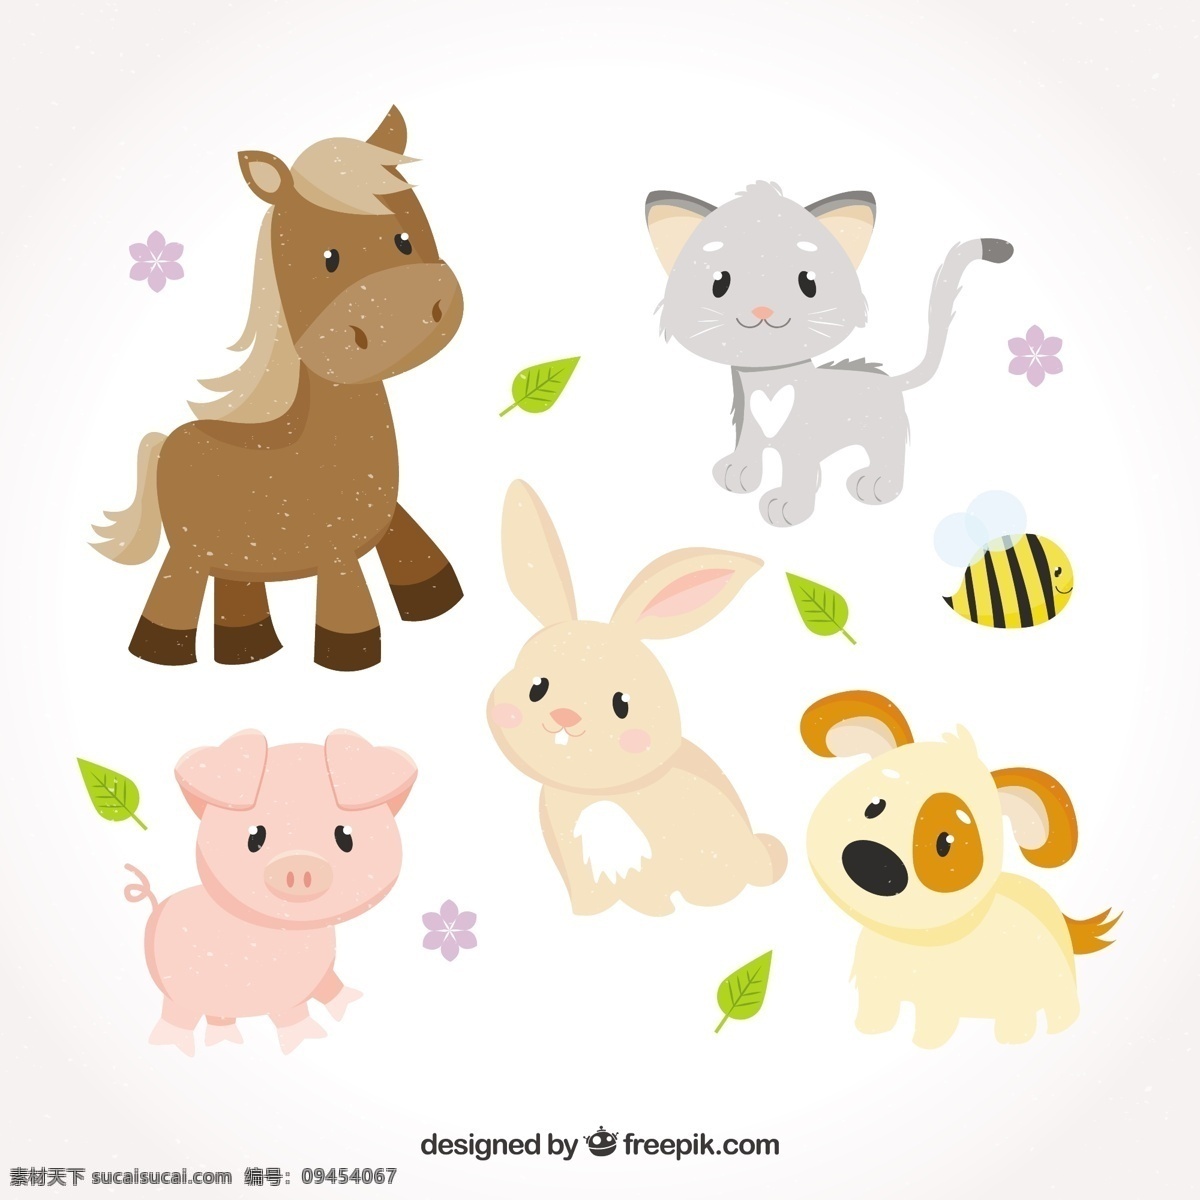 可爱 宝贝 动物 婴儿 狗 自然 卡通 猫 微笑 快乐 多彩 马 扁 兔 猪 甜 平的设计 有趣 可爱的动物